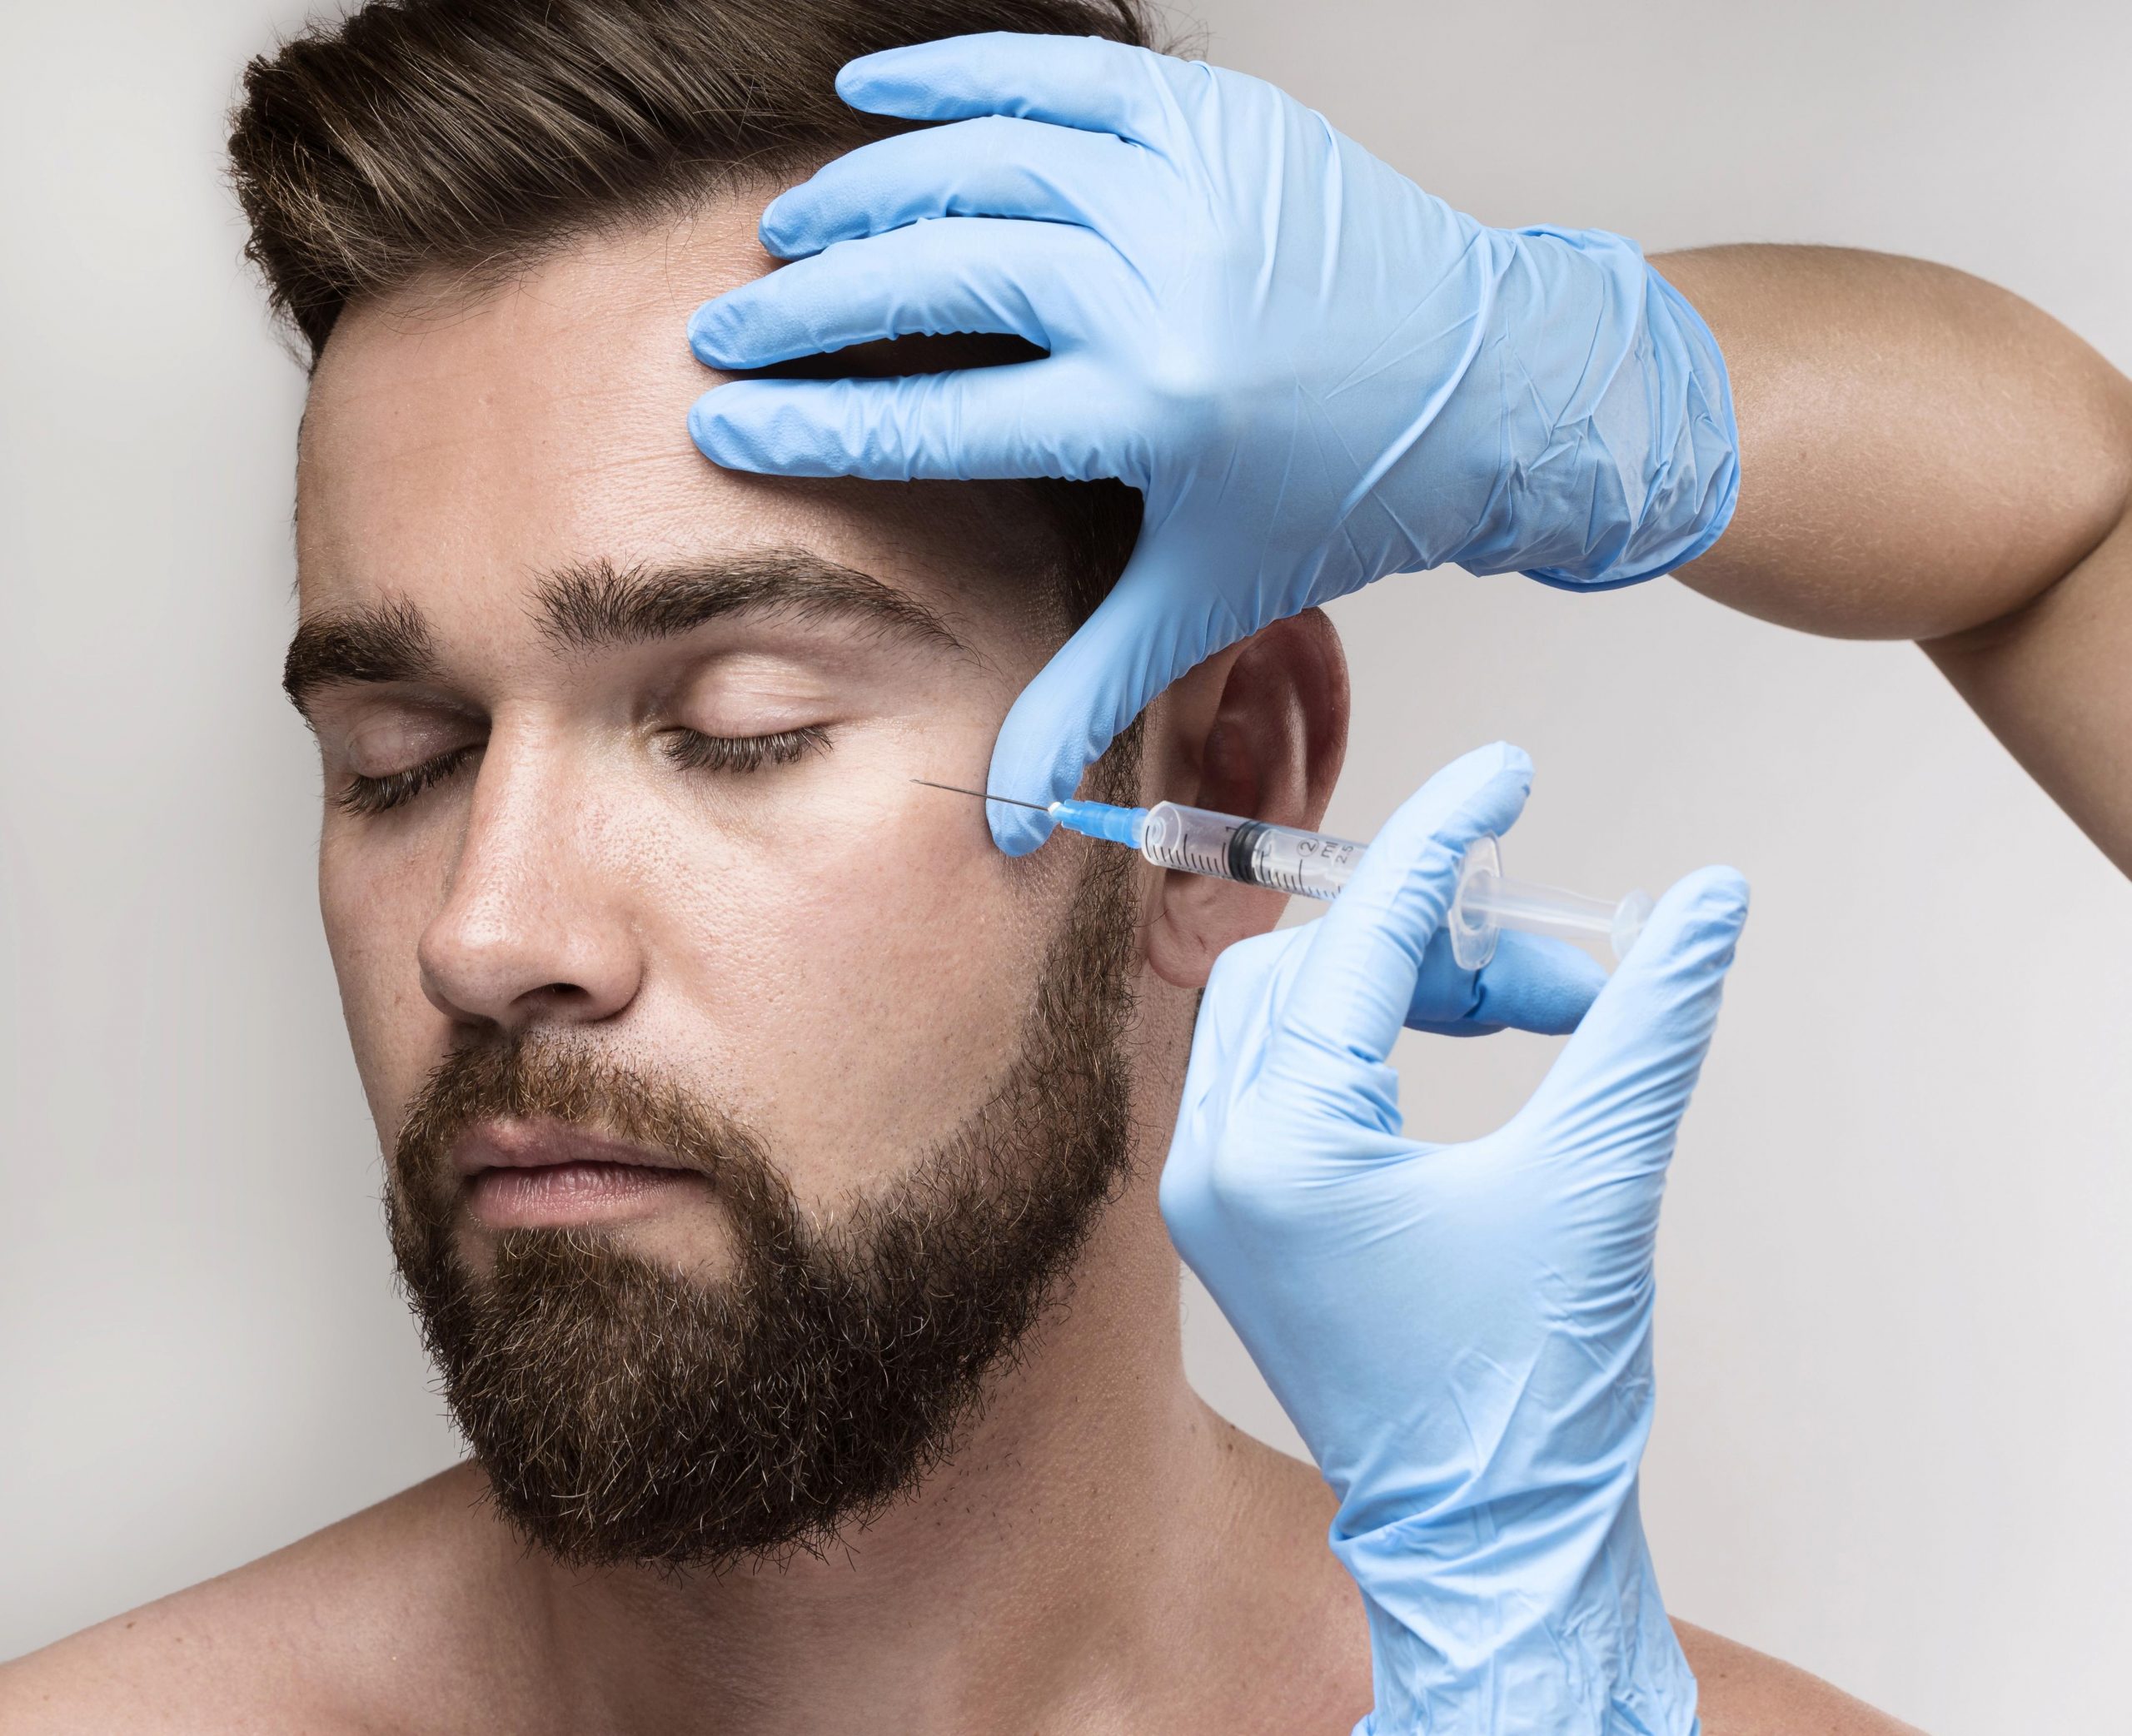 Homens representam 35% dos pacientes em procedimentos estéticos e cirurgias plásticas no Brasil